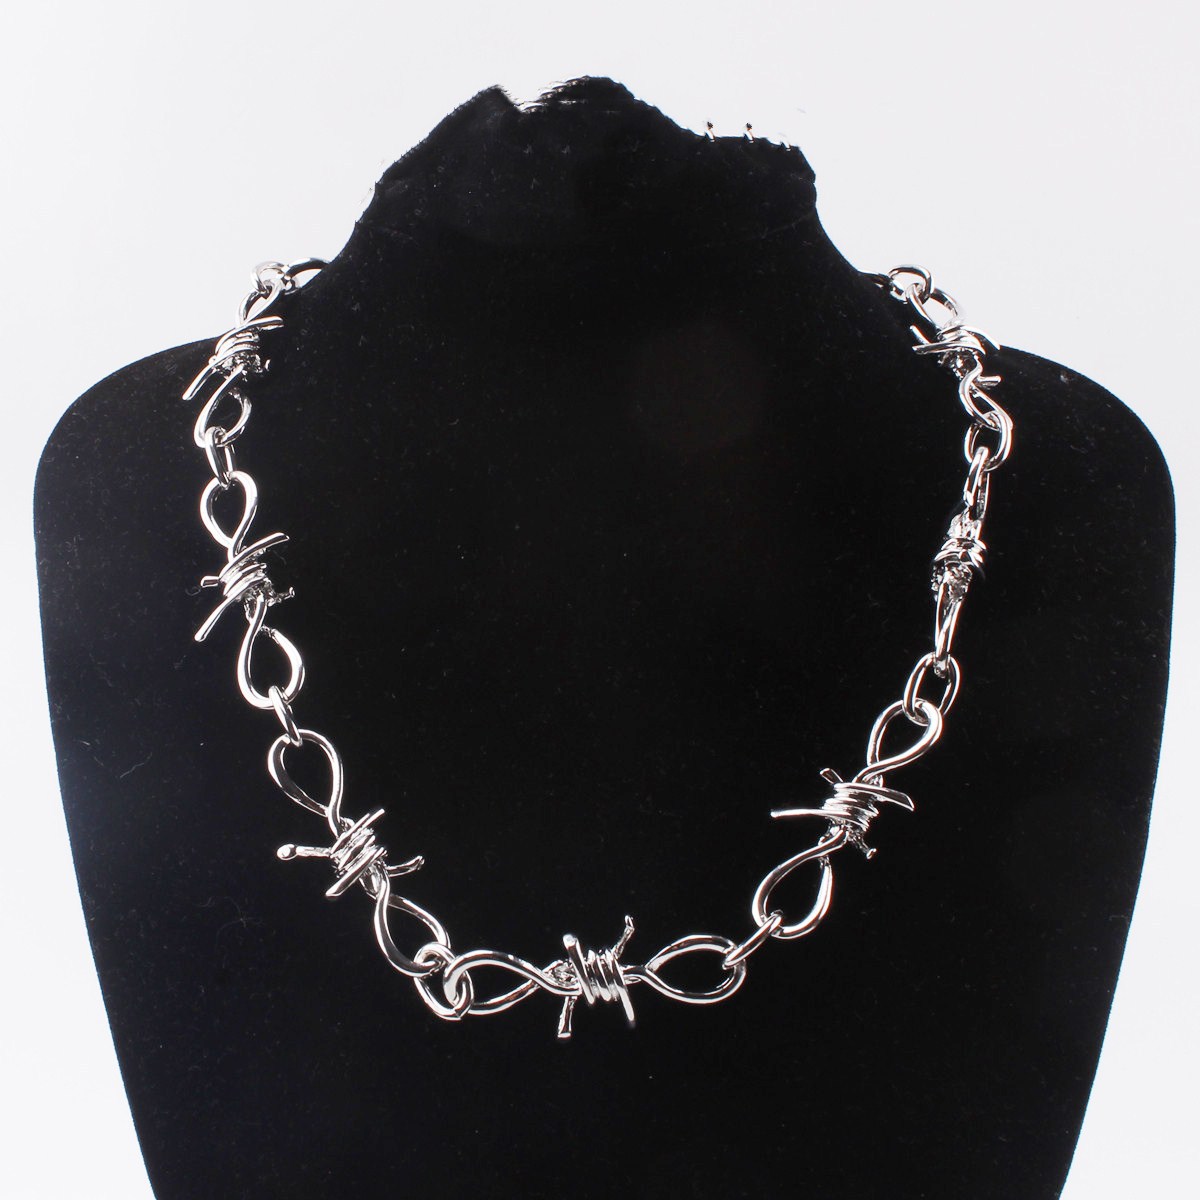 51 cm necklace